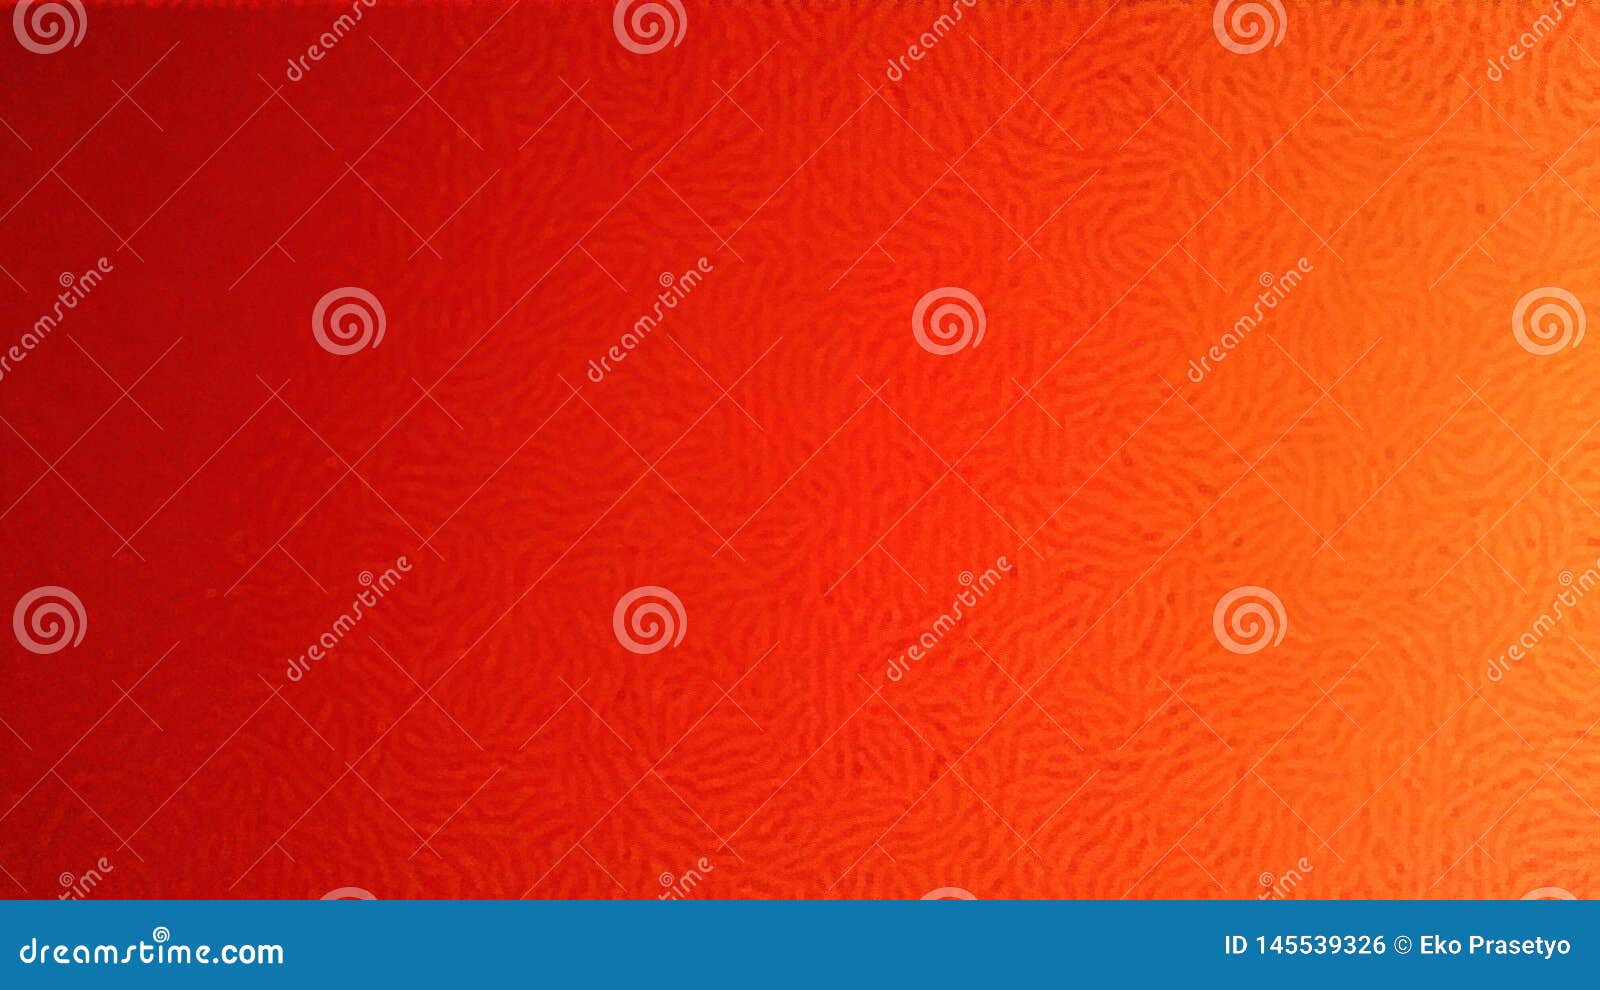 Hãy xem ảnh nền Orange background color combination tuyệt đẹp này để khám phá cách kết hợp màu sắc ấn tượng và tạo nên hình ảnh sinh động và đầy sức sống.